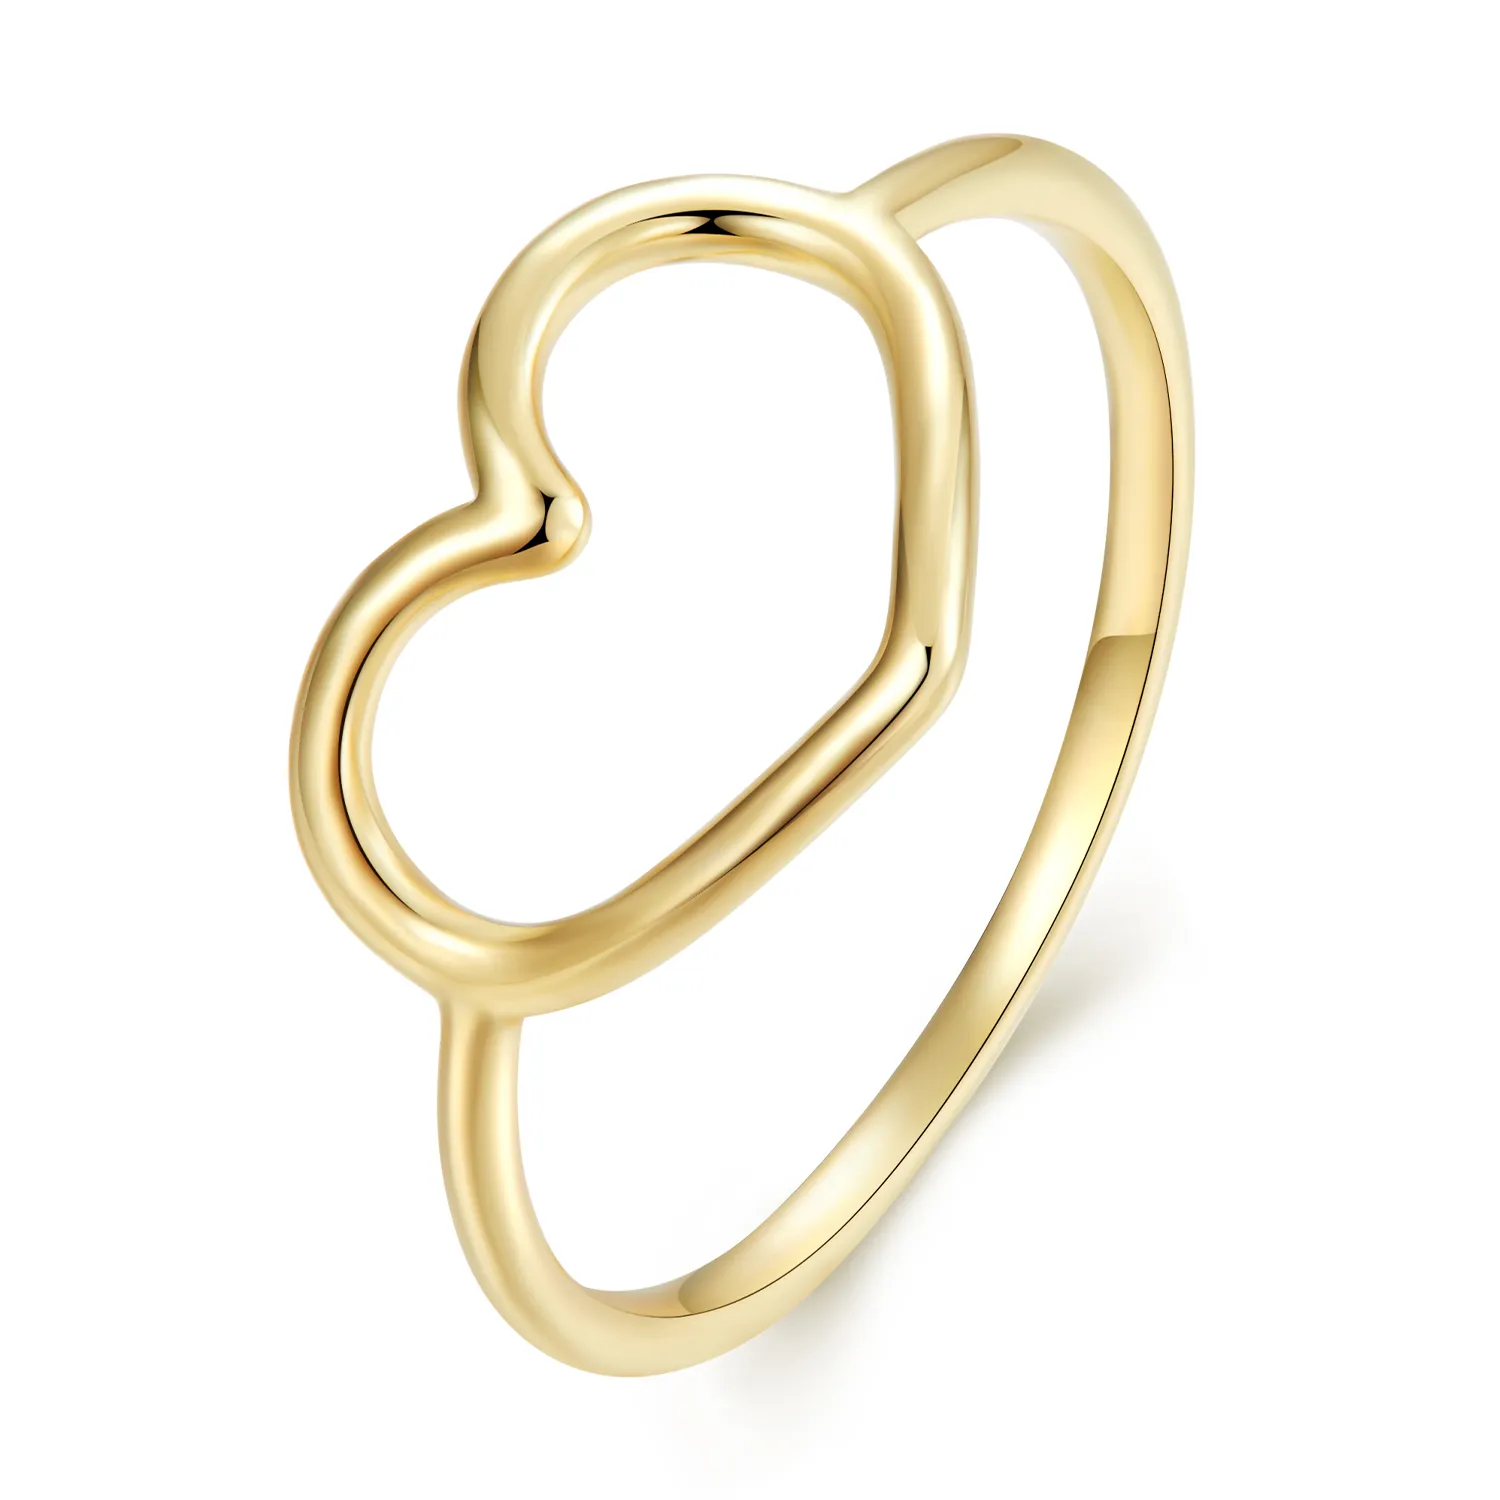 inel în stil pandora formă inimă aurit scr641 b